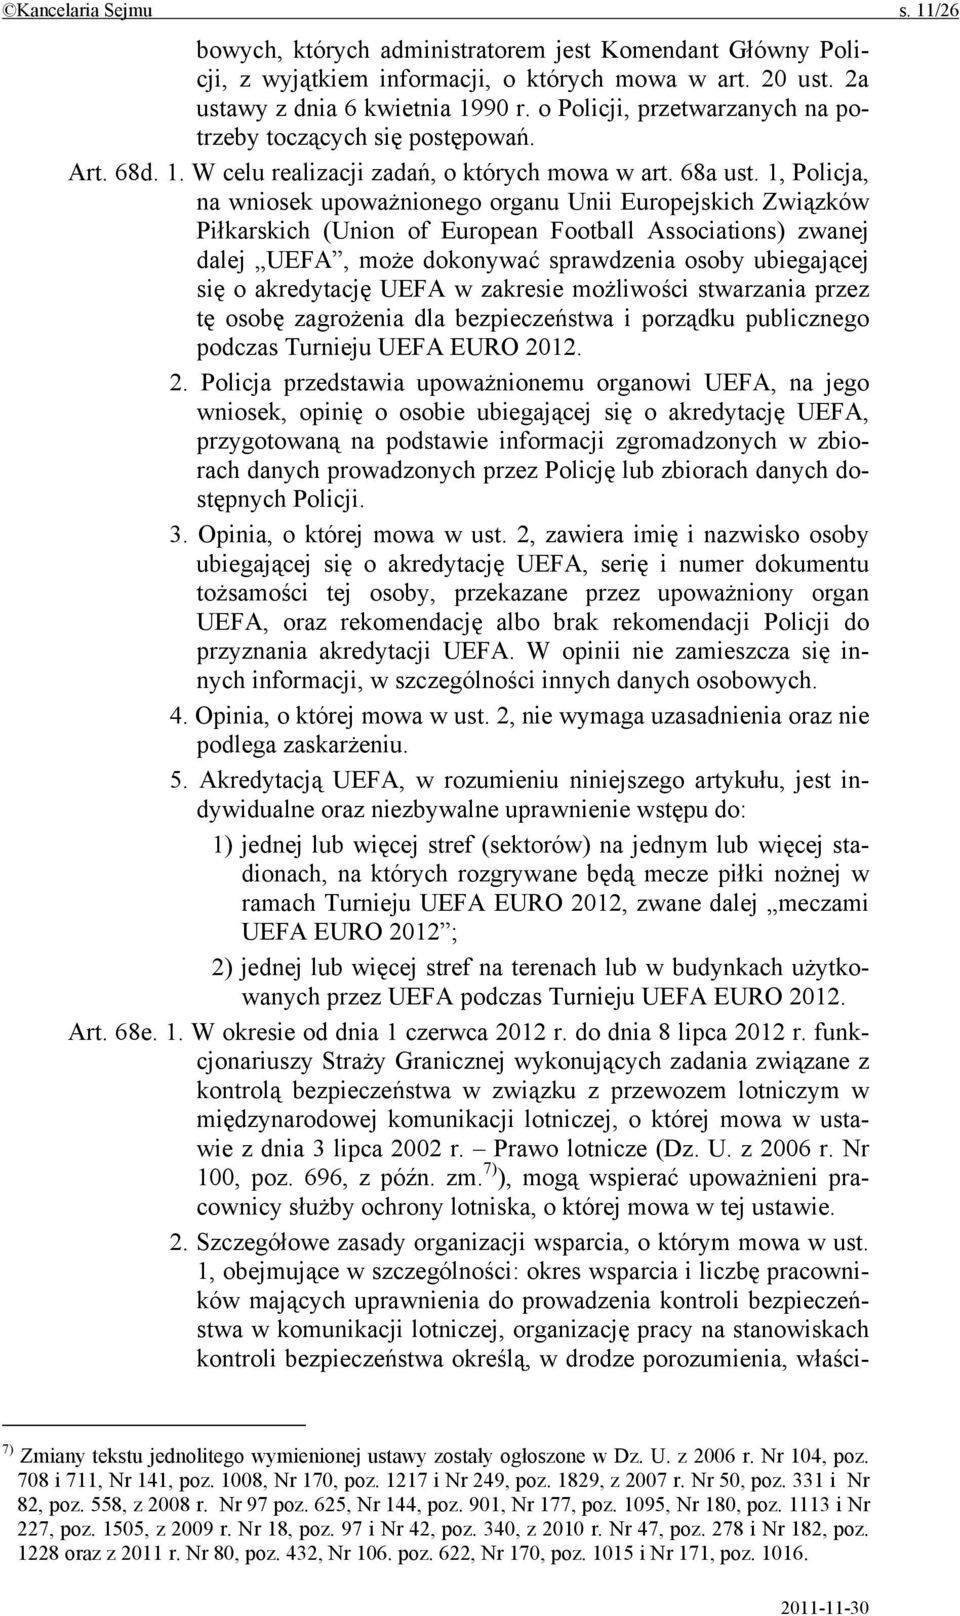 1, Policja, na wniosek upoważnionego organu Unii Europejskich Związków Piłkarskich (Union of European Football Associations) zwanej dalej UEFA, może dokonywać sprawdzenia osoby ubiegającej się o